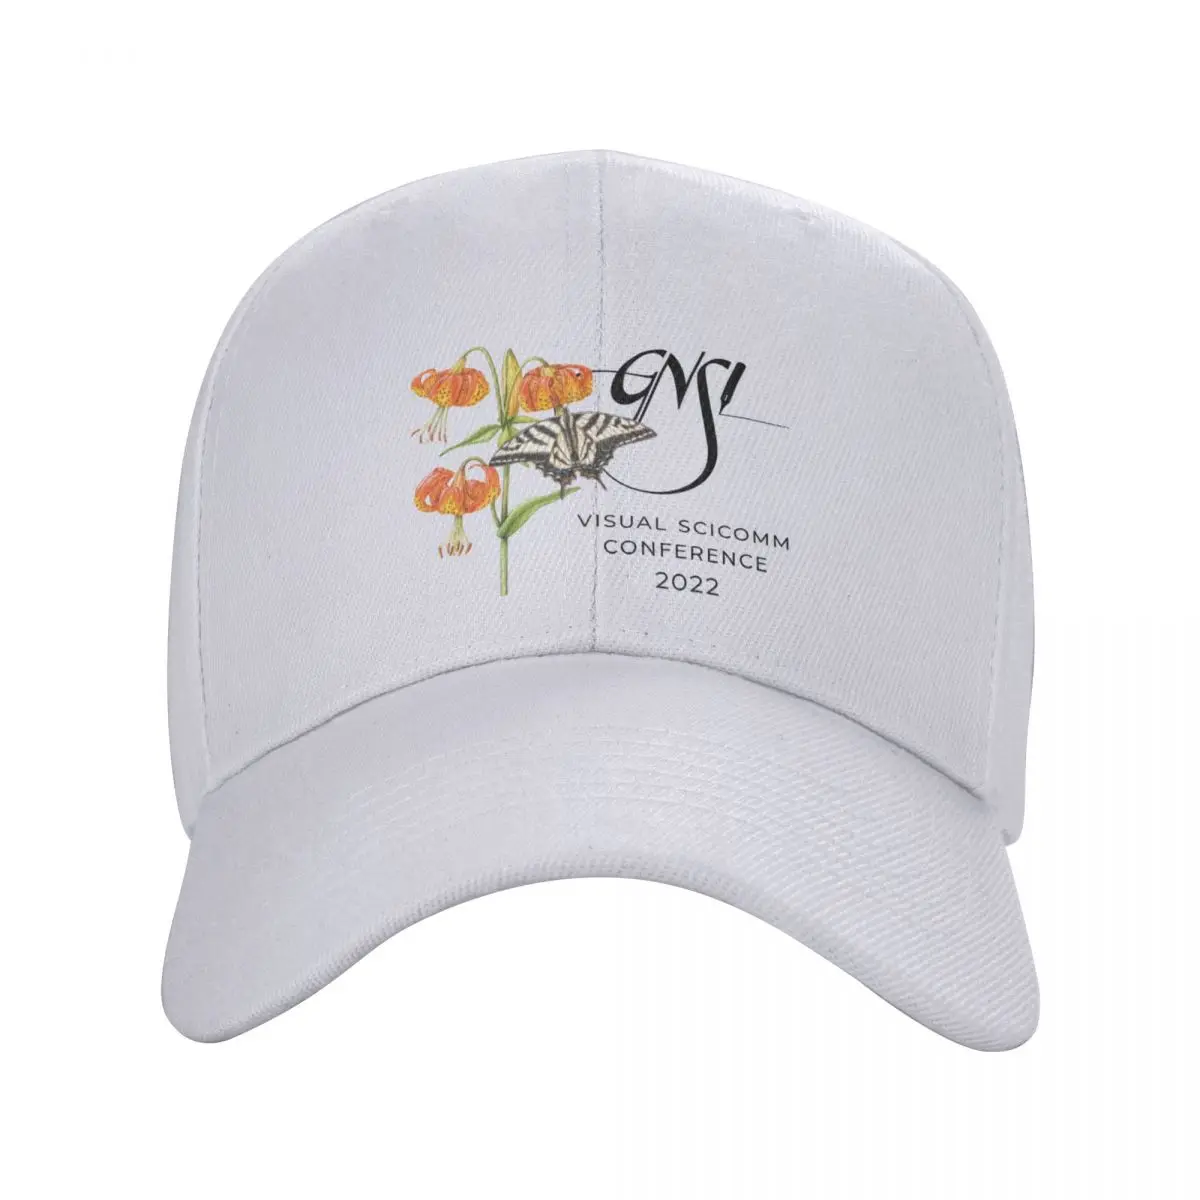 2022 GNSI logotipo de la conferencia (compacto) Cap Gorra de Béisbol personalizado gorra sombrero para hombre Mujer . ' - ' . 1